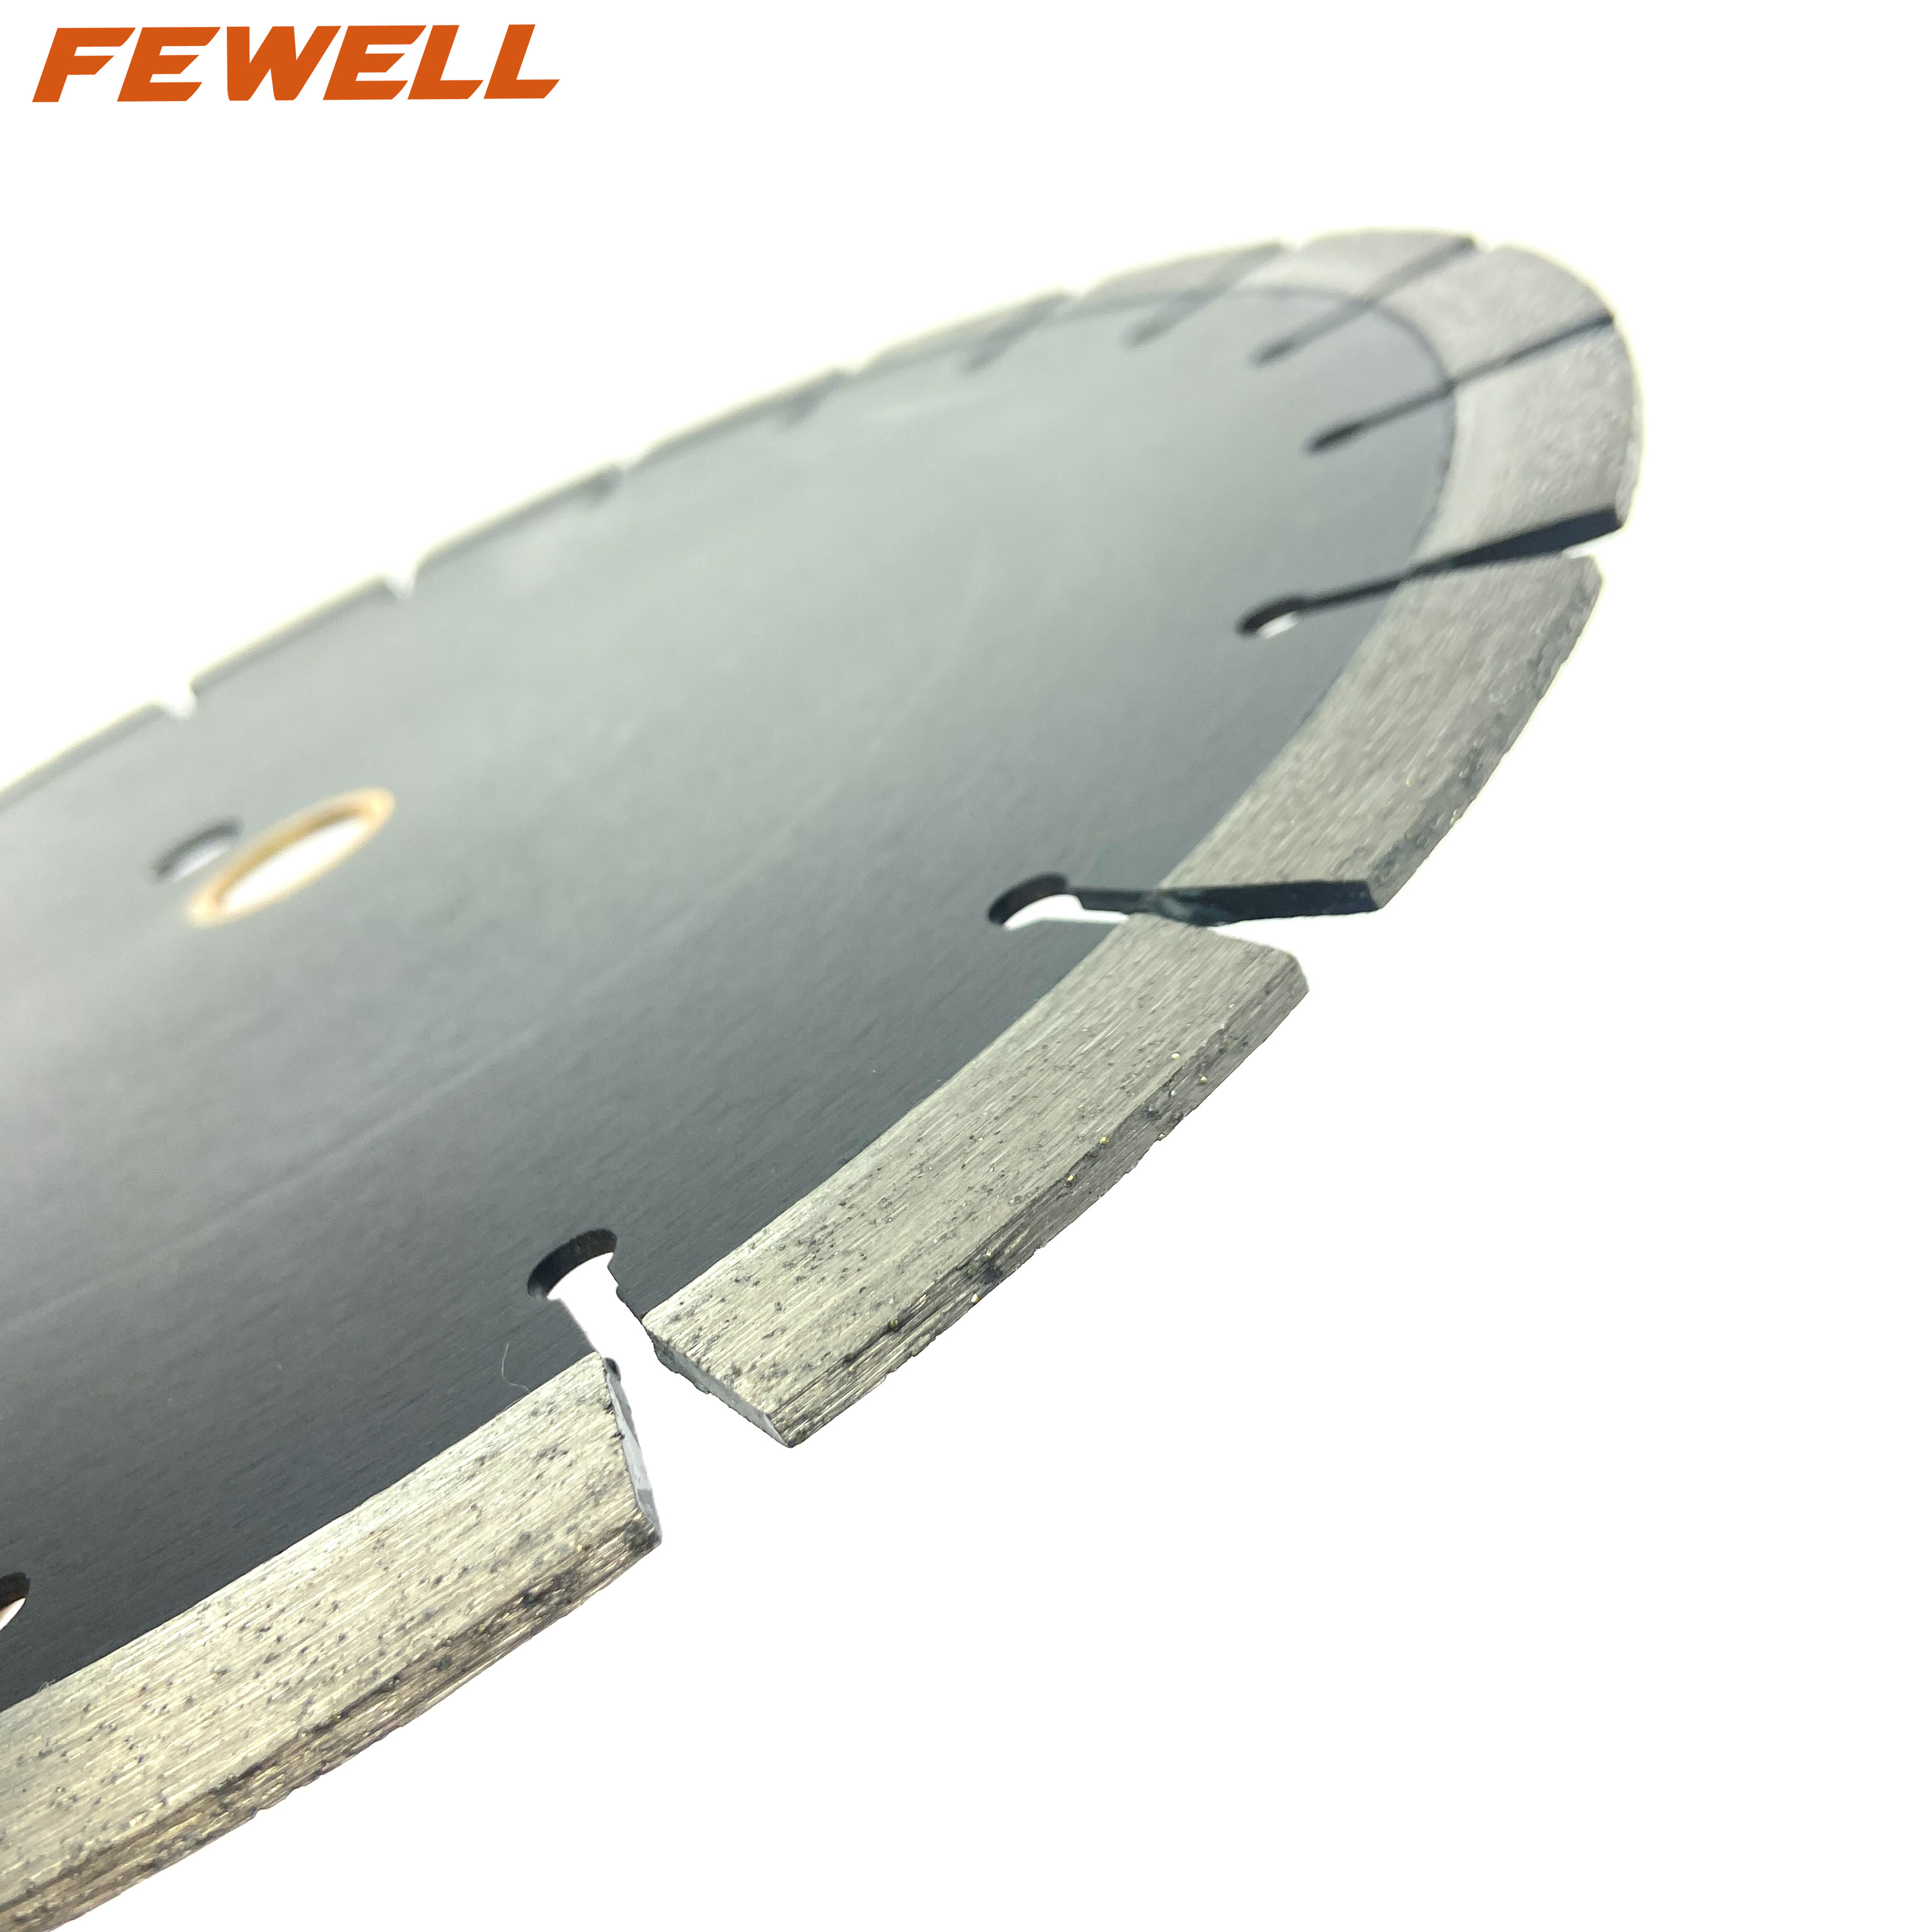 Hoja de sierra cortadora de diamante soldada con láser de 12 pulgadas 300*3,2*15*25,4 para cortar paredes de hormigón armado